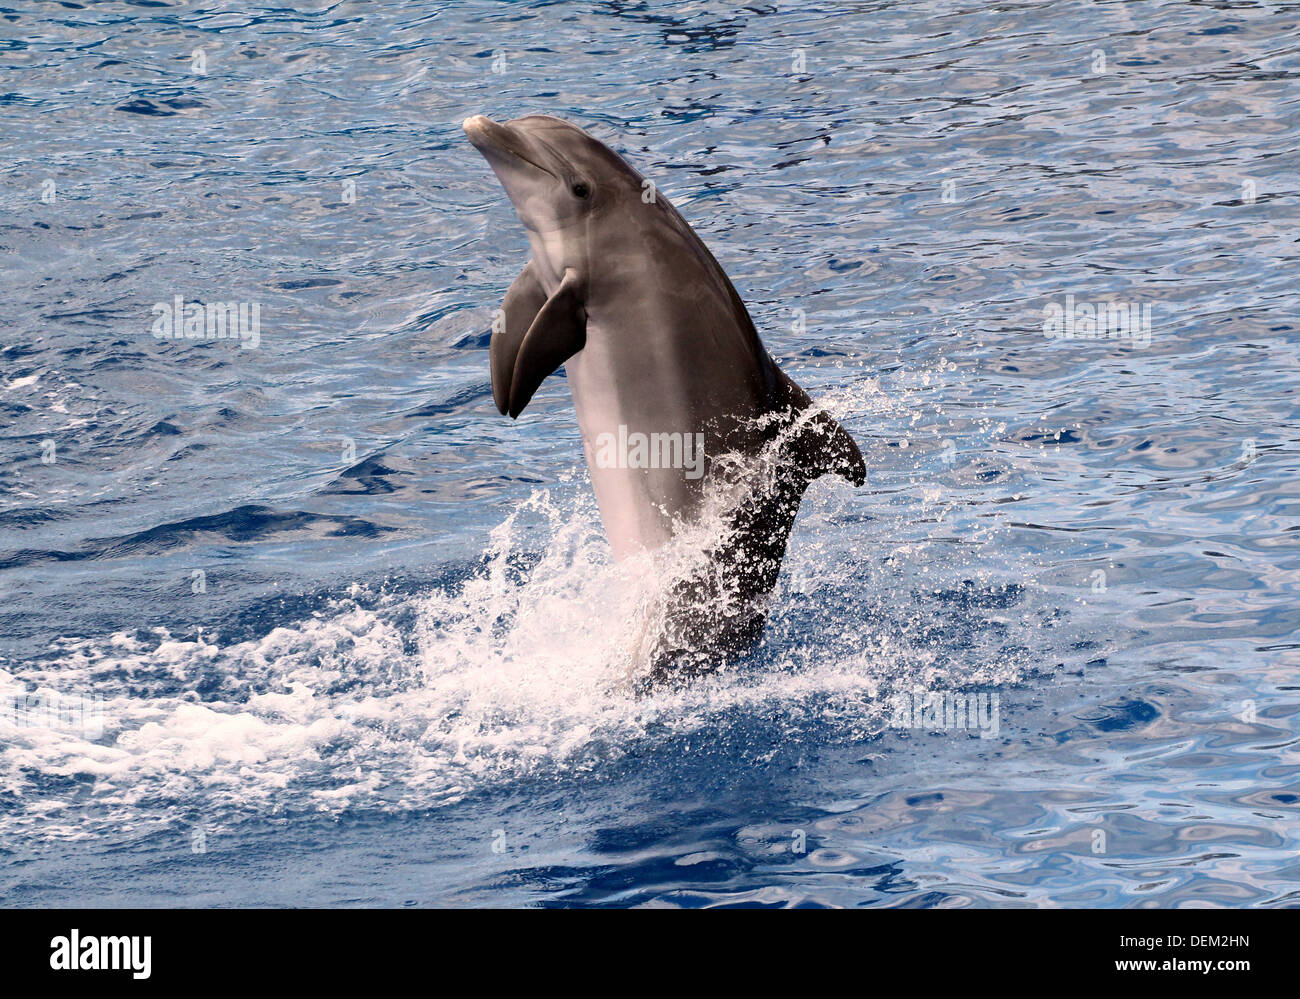 Série de 22 images de dauphins à effectuer à l'Oceanografic Aquarium Marine Park à Valence, Espagne Banque D'Images